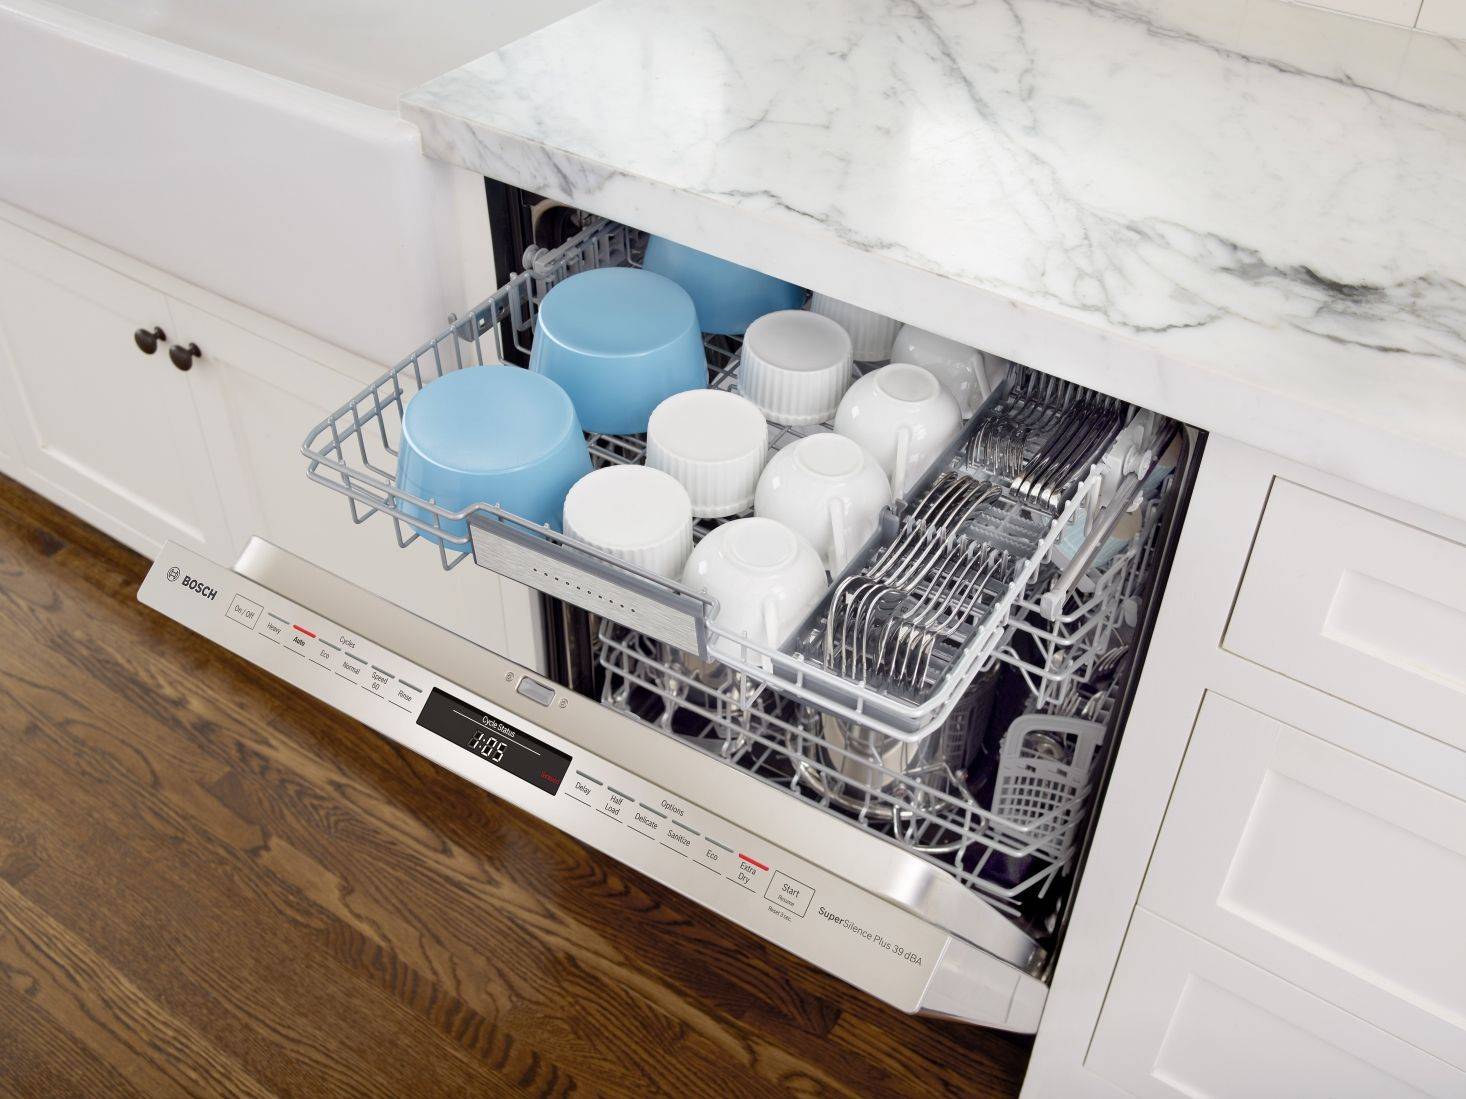 Как выбрать посудомоечную машину для дома, советы